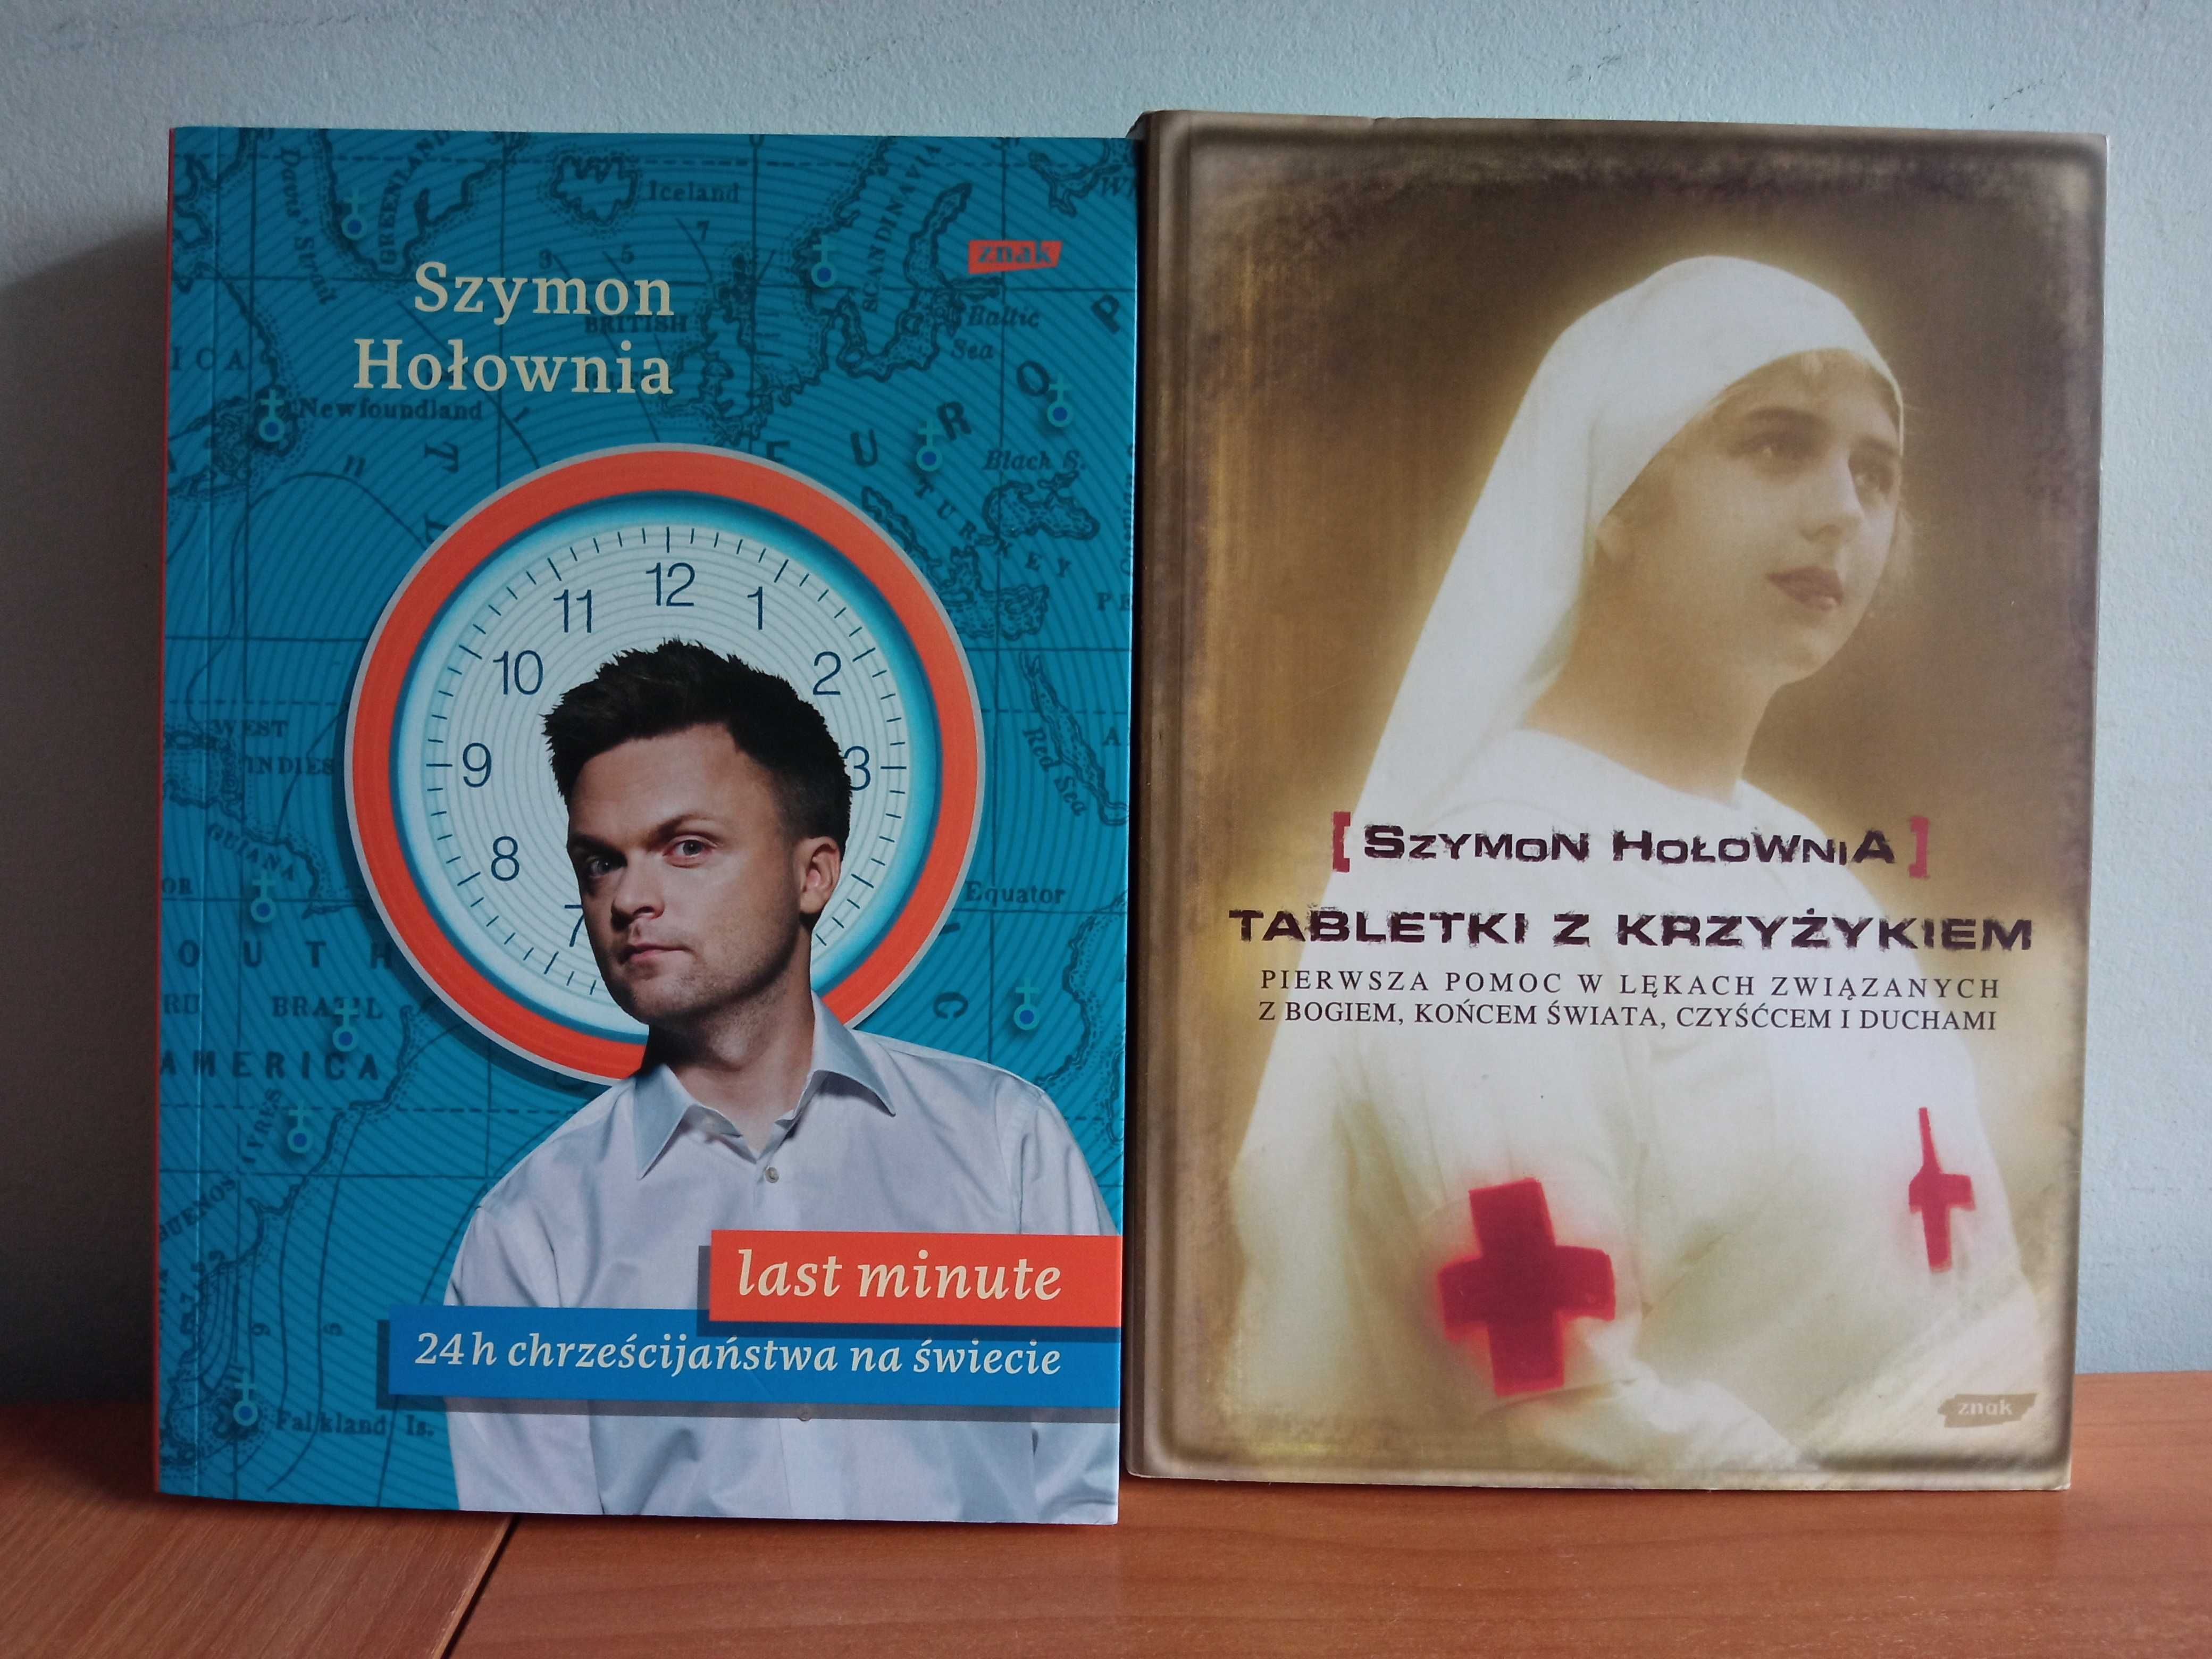 Szymon Hołownia - Tabletki z krzyżykiem (2009) + Last minute (2012)